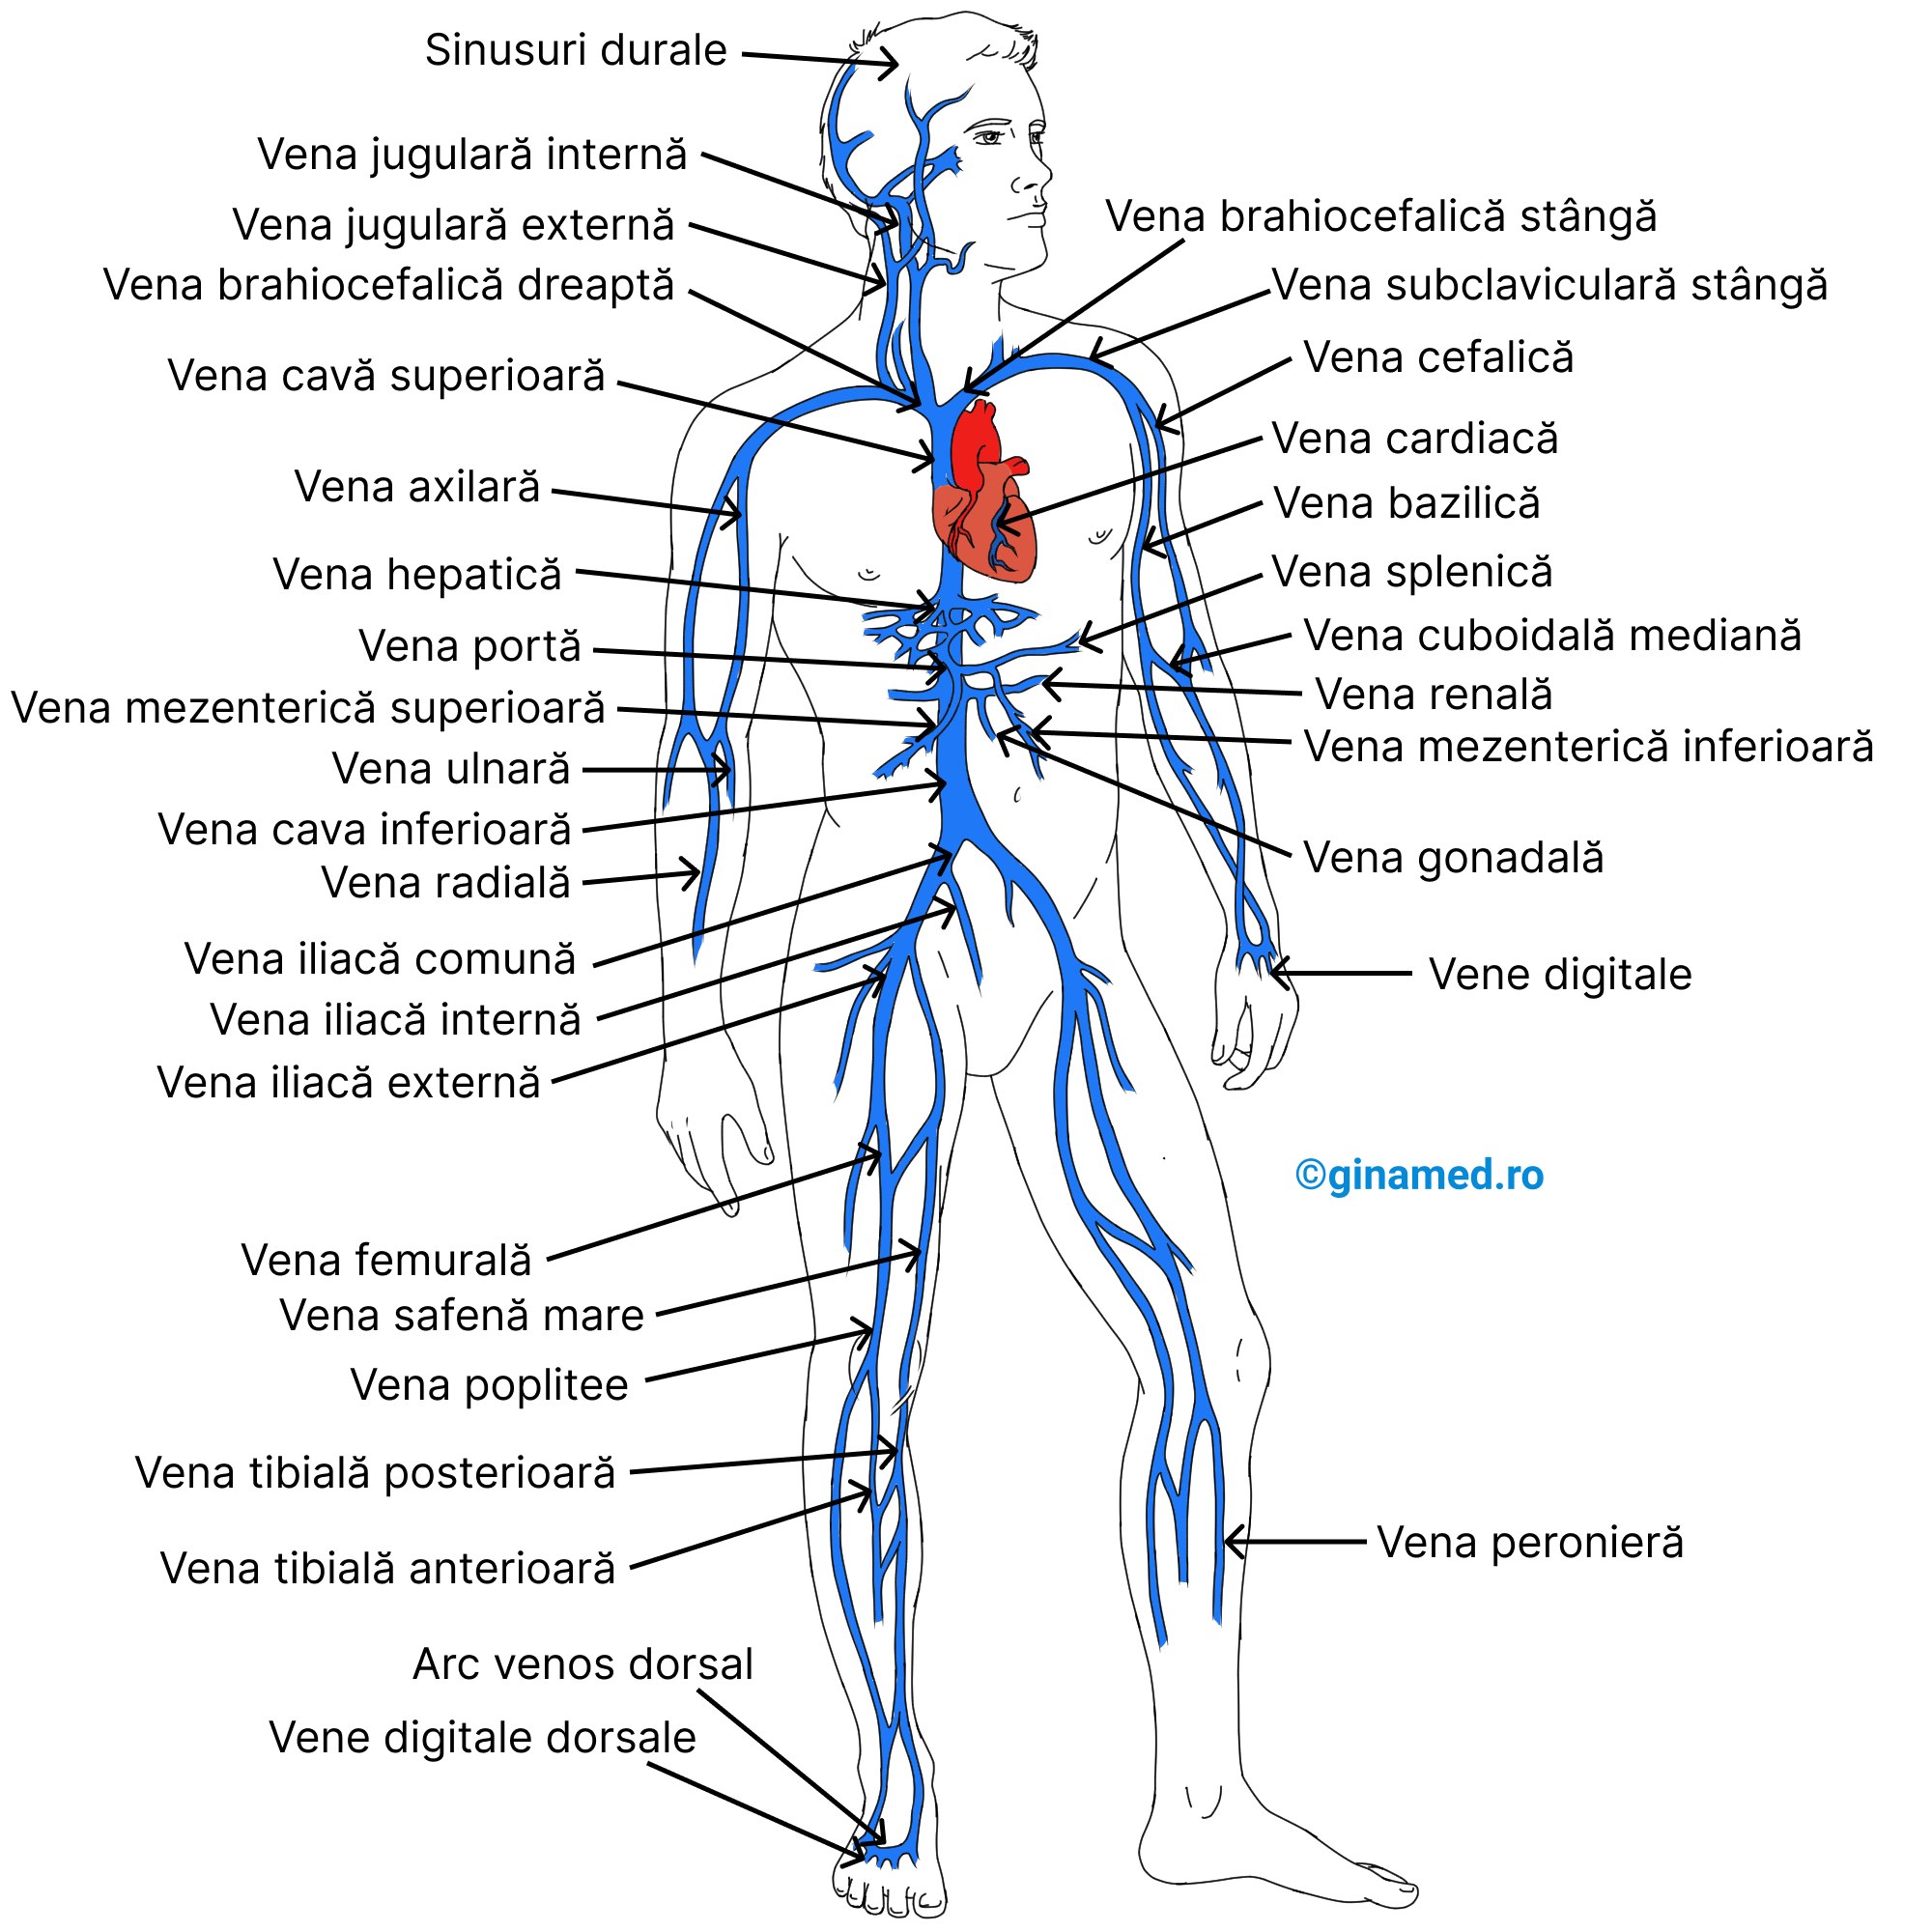 Principalele vene ale organismului, cu excepția venelor pulmonare.